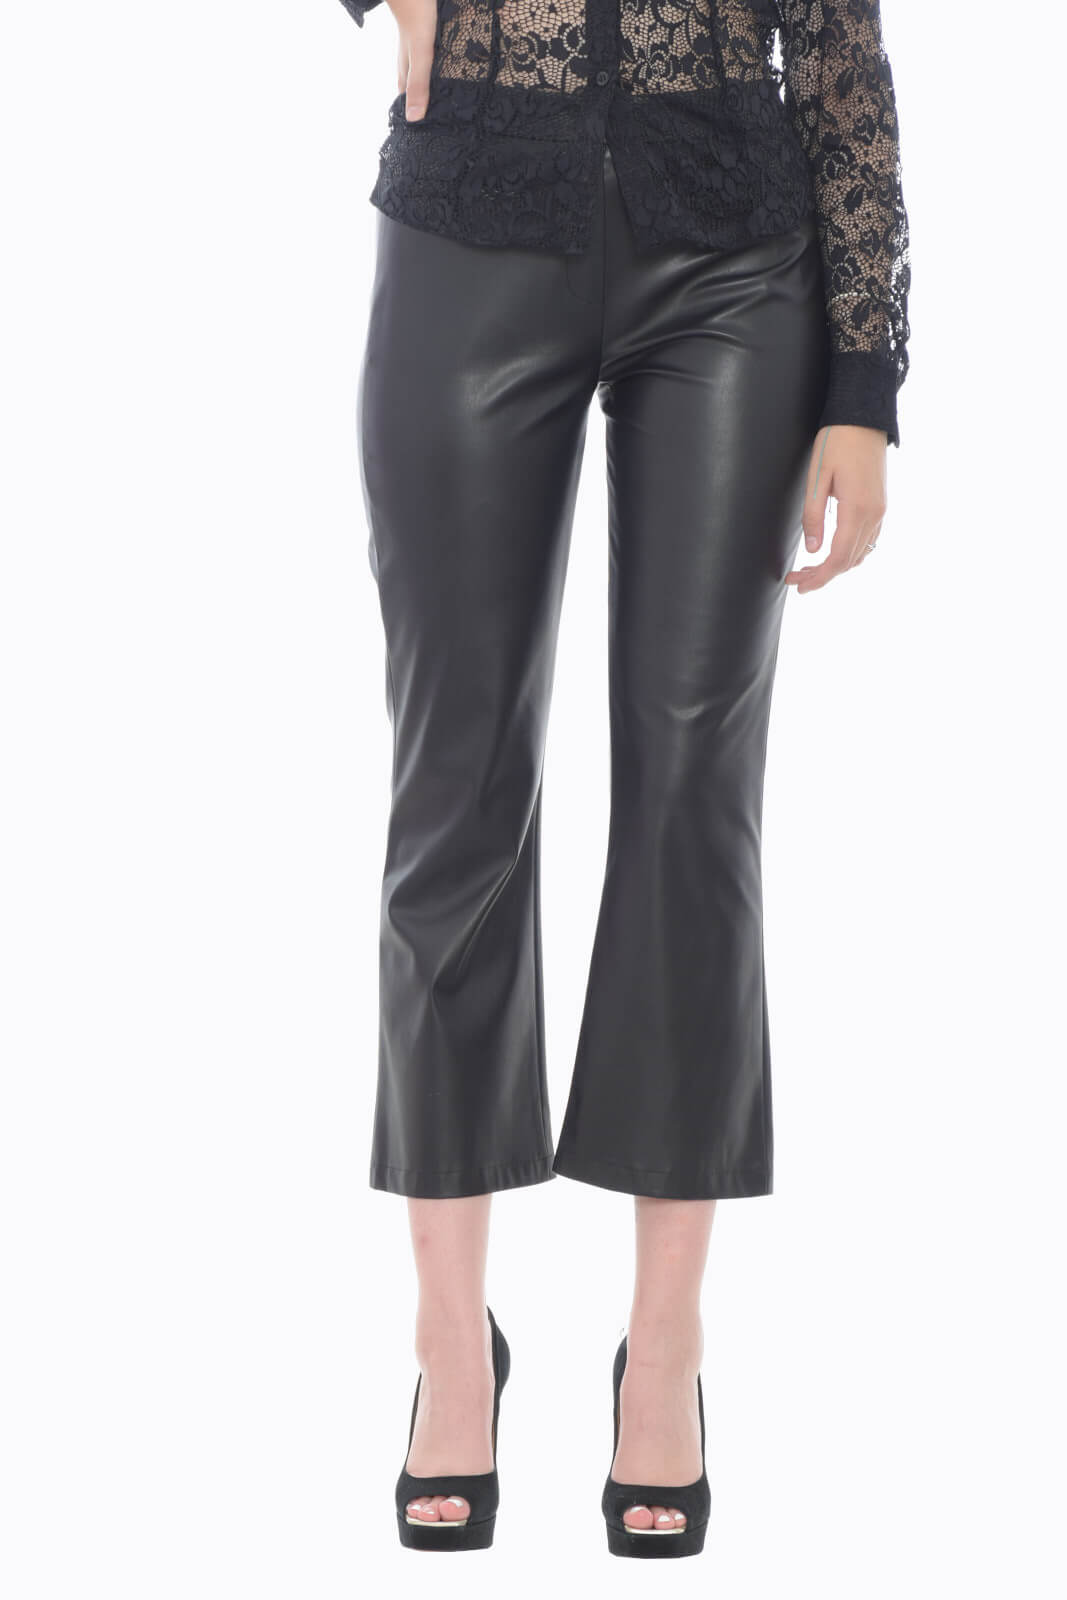 Liu Jo women's eco-leather trousers